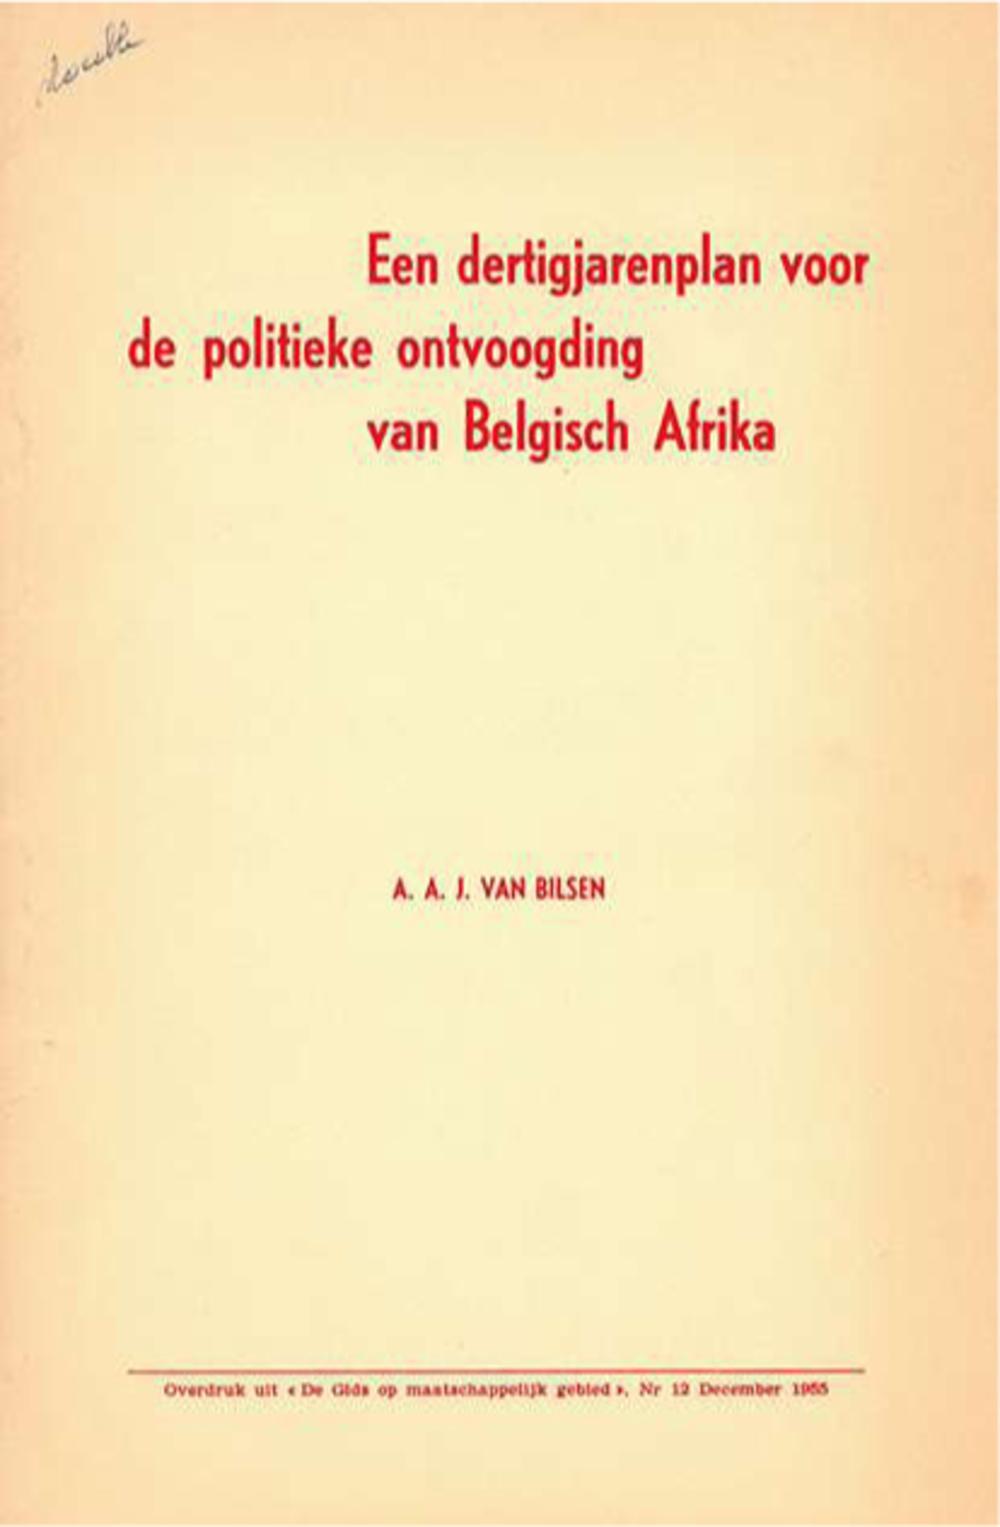 VAN BILSEN, A.A.J., 'Een dertigjarenplan voor de politieke ontvoogding van Belgisch Afrika', in: De gids op maatschappelijk gebied, 12, december 1955.